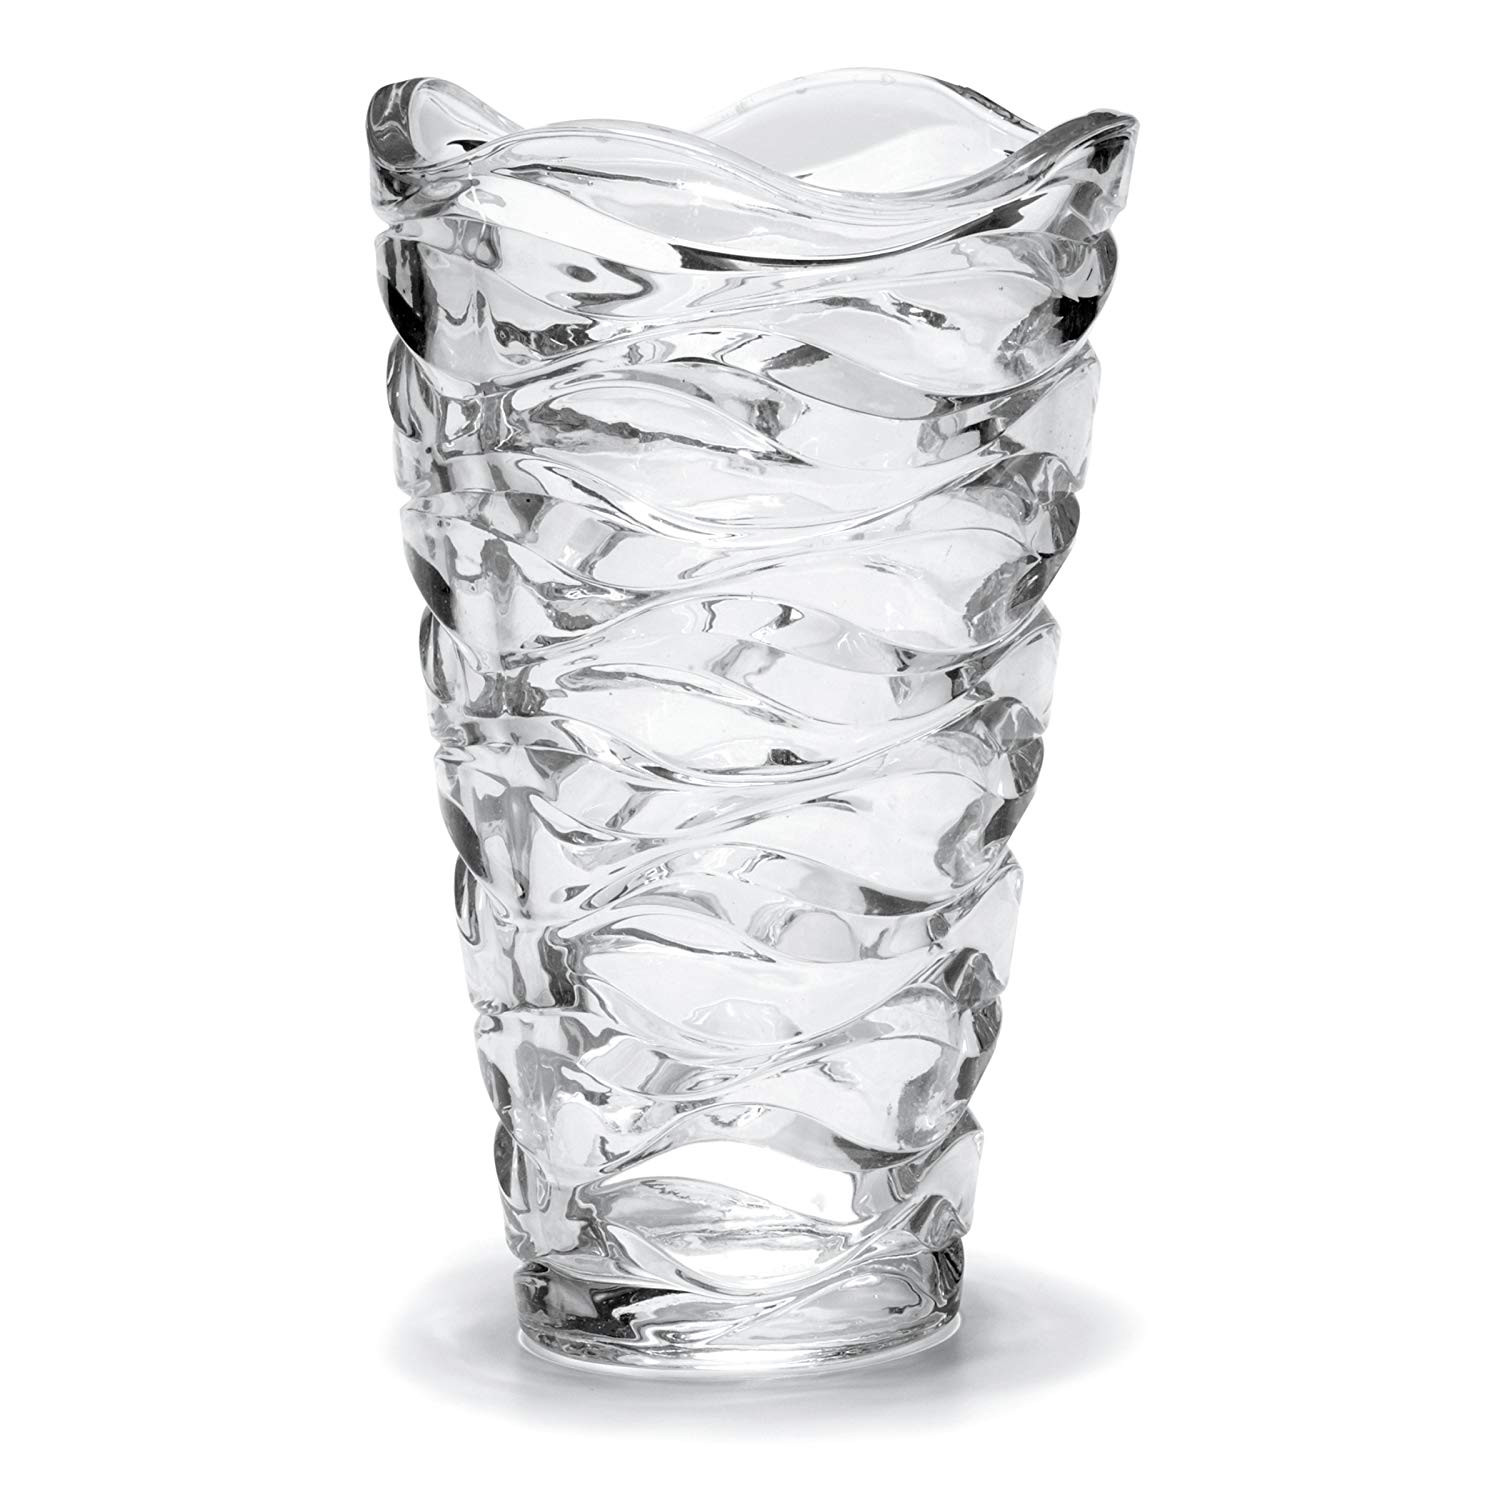 14 attractive Waterford Markham Vase 2024 free download waterford markham vase of amazon com mikasa atlantic crystal vase 11 inch home kitchen in 81npldxgwnl sl1500